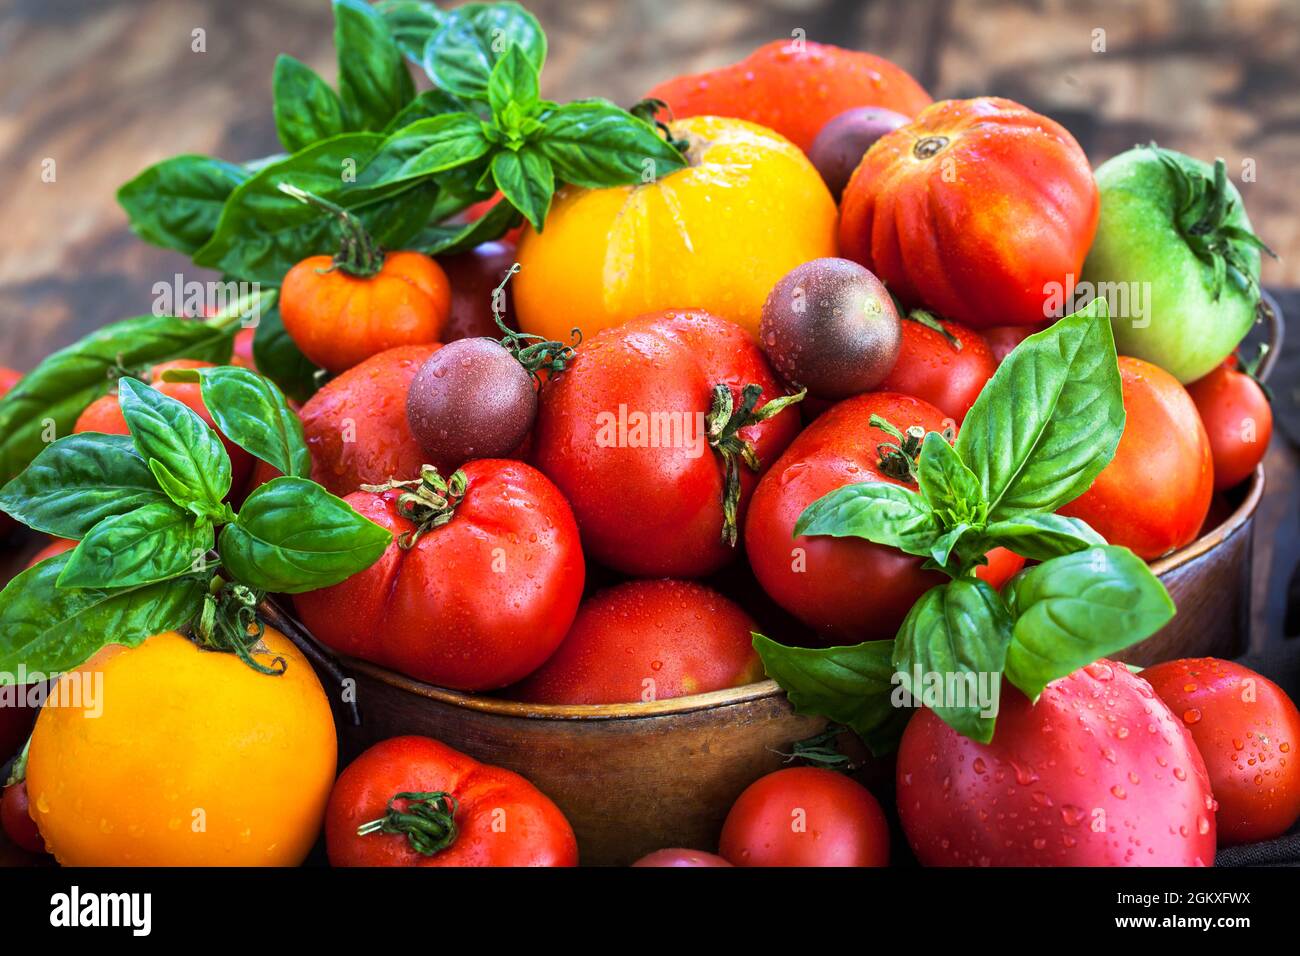 Pomodori freschi maturi rossi e gialli su sfondo rustico Foto Stock